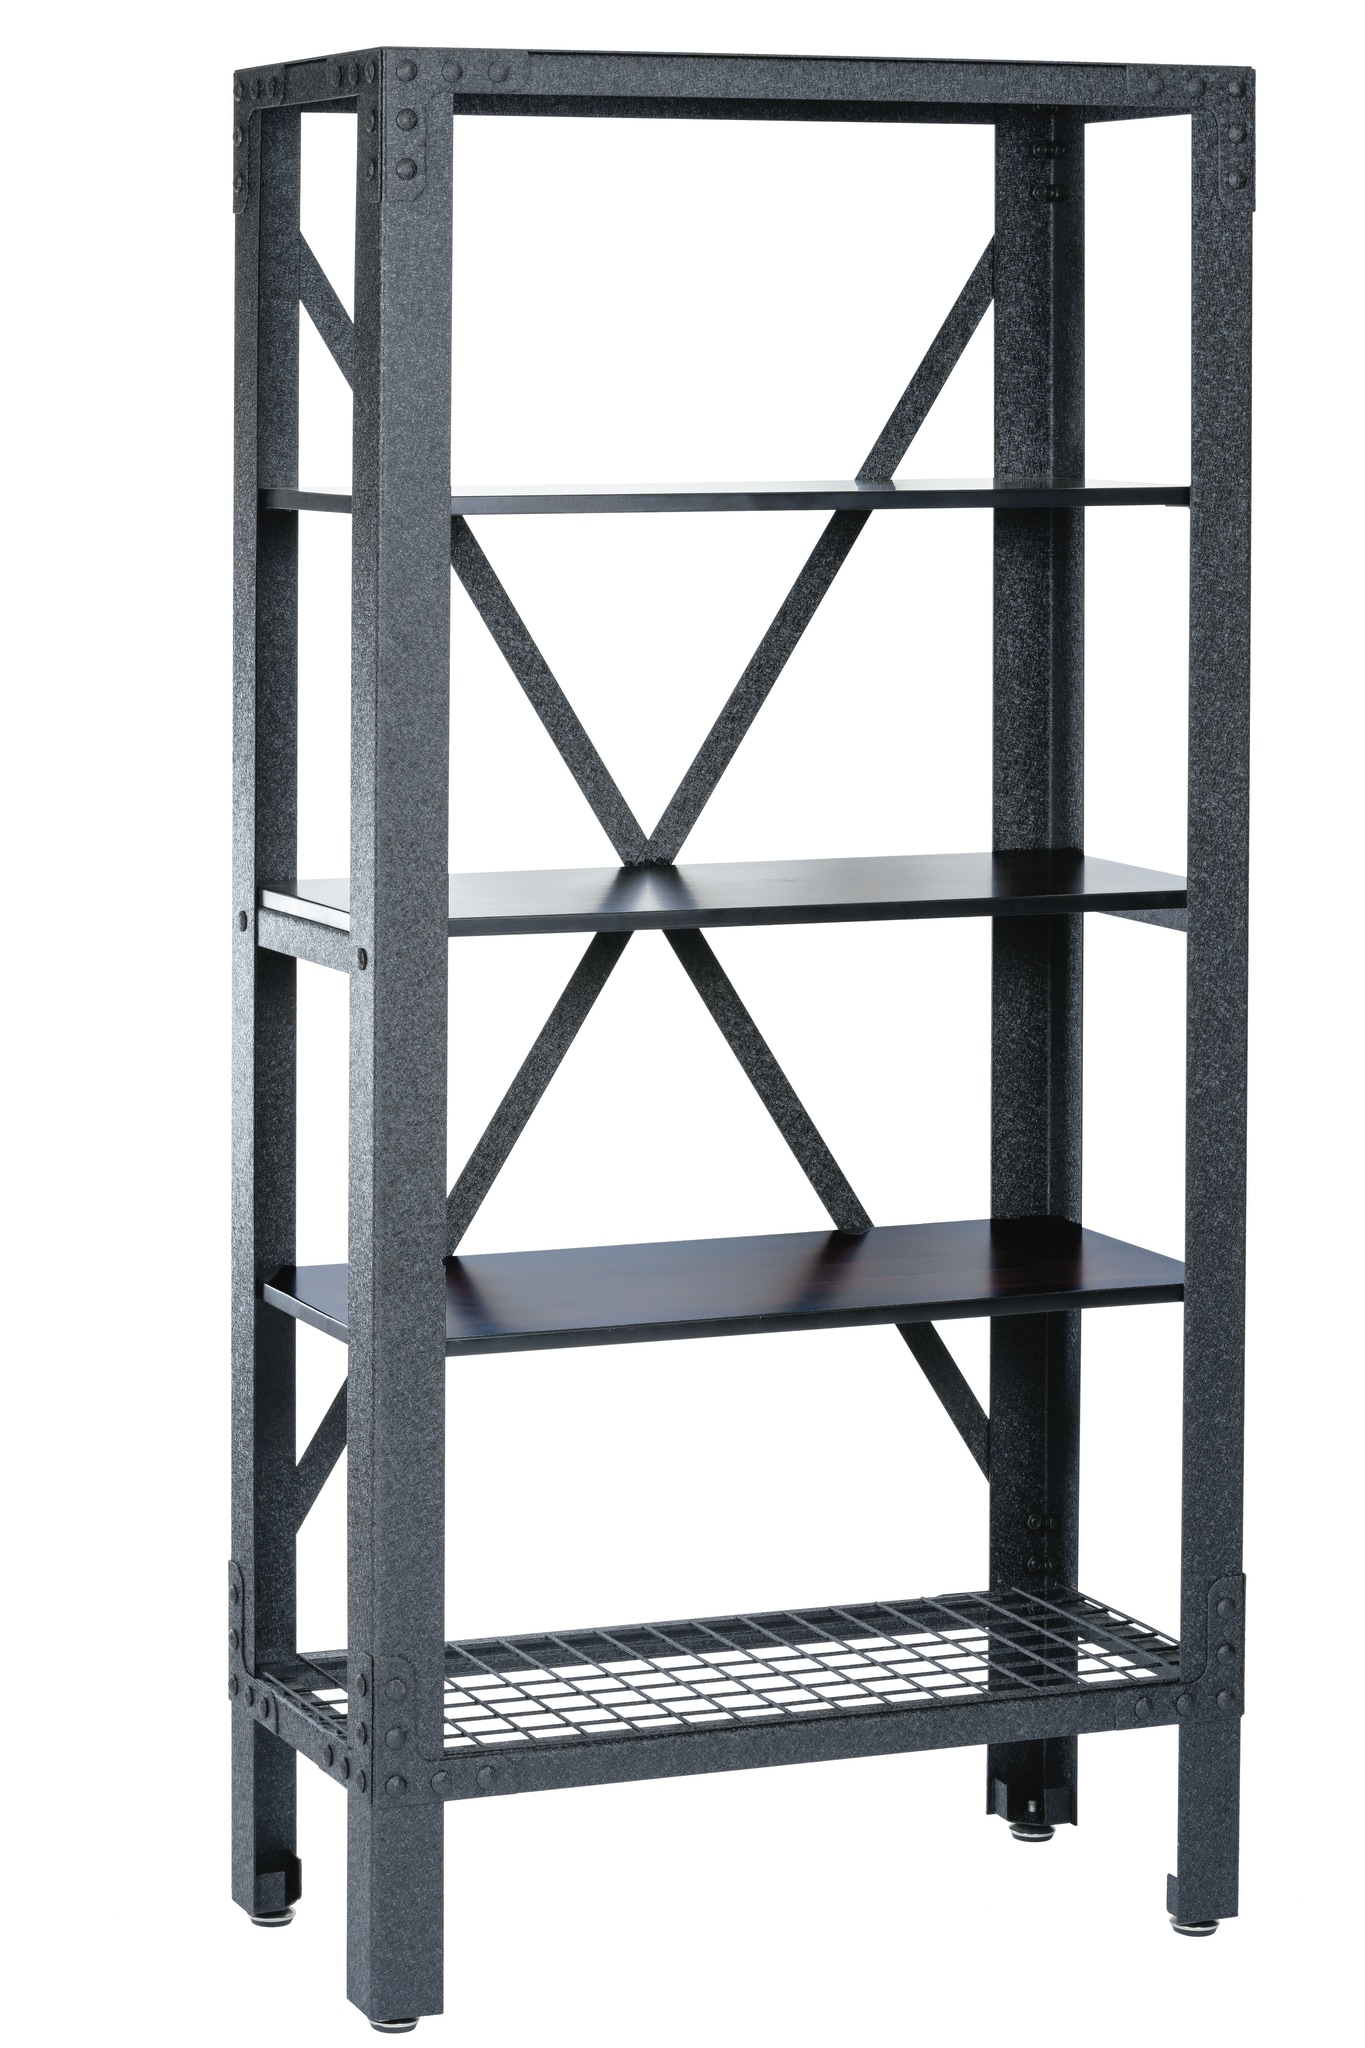 KING'S RACK Storage Bin Rack System Steel Heavy Duty 4-Tier Utility  Shelving Unit (33-in W x 15-in D x 36-in H), Gray